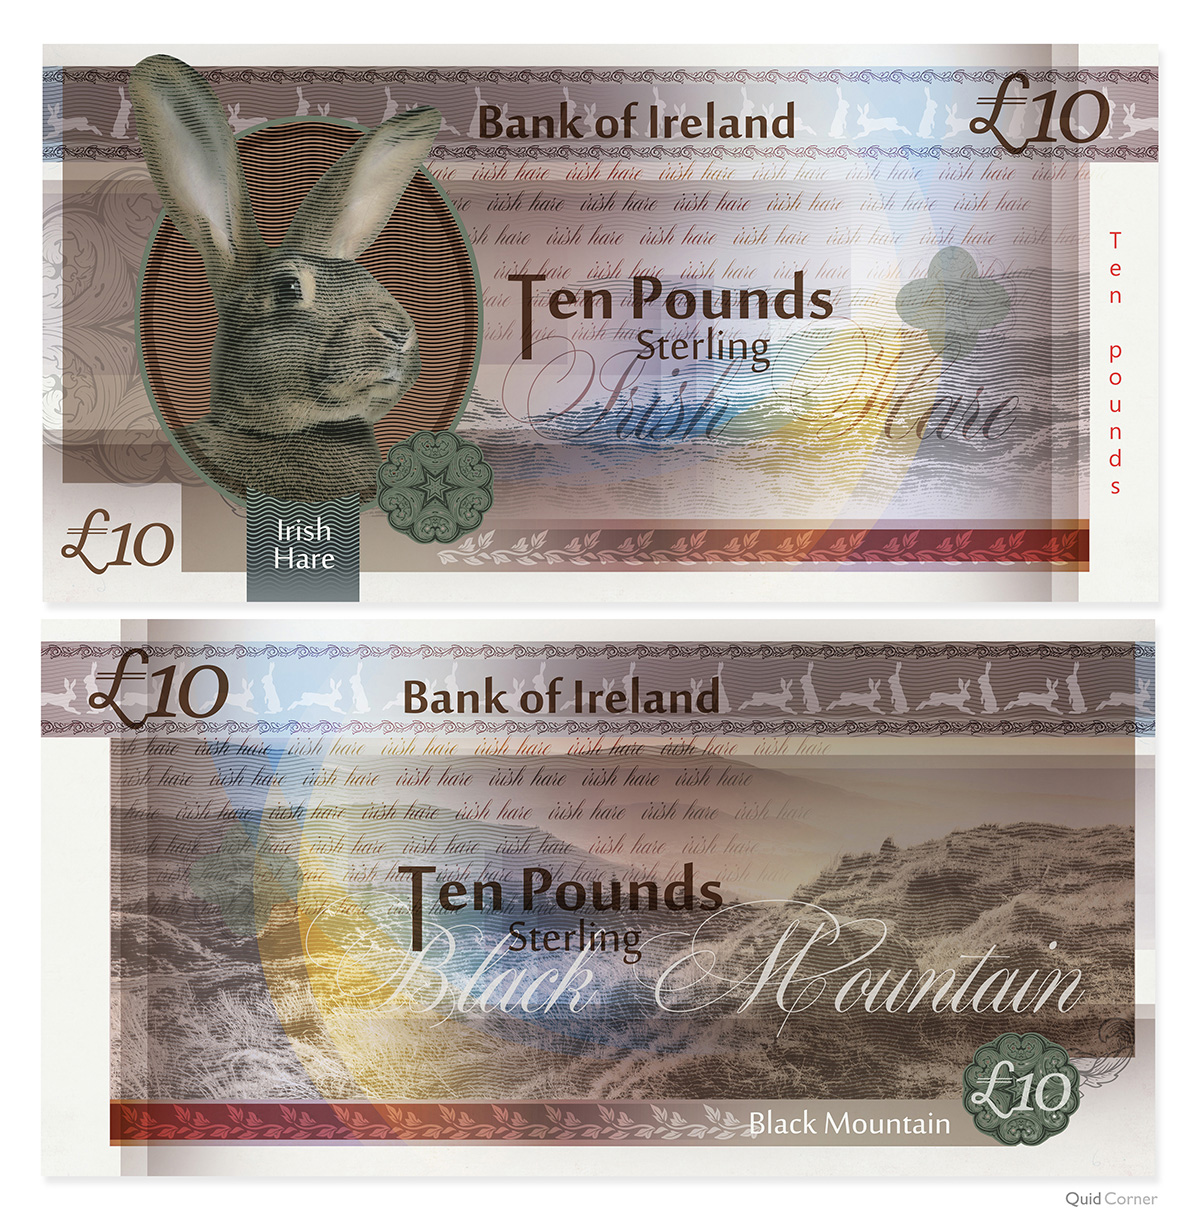 Irish Hare £10